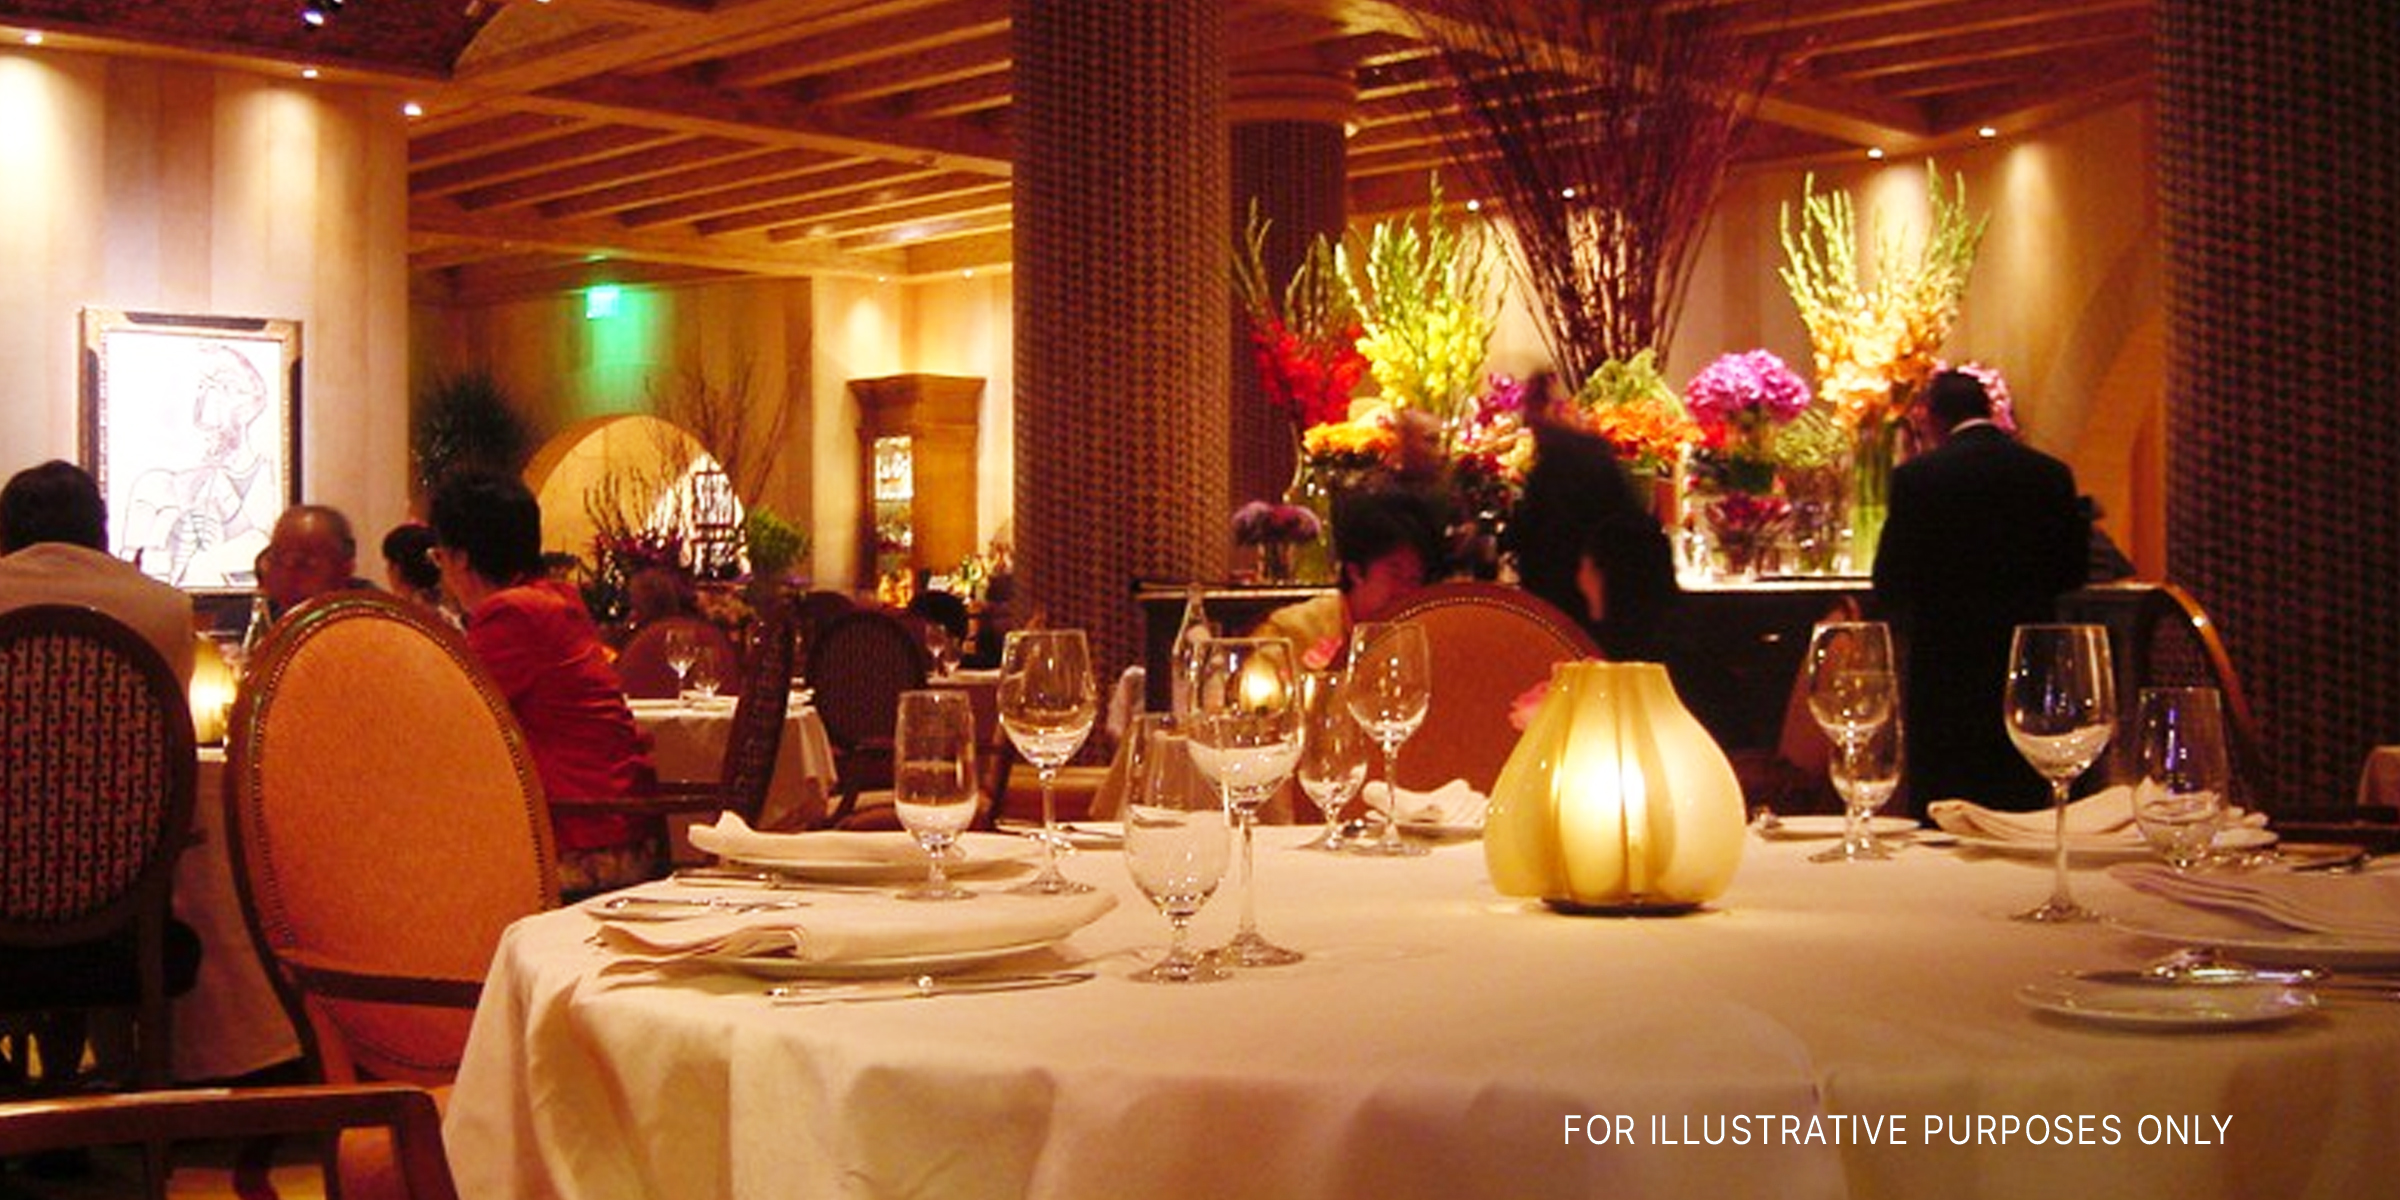 Ein feines Restaurant | Quelle: flickr.com/extravigatorCC BY-ND 2.0